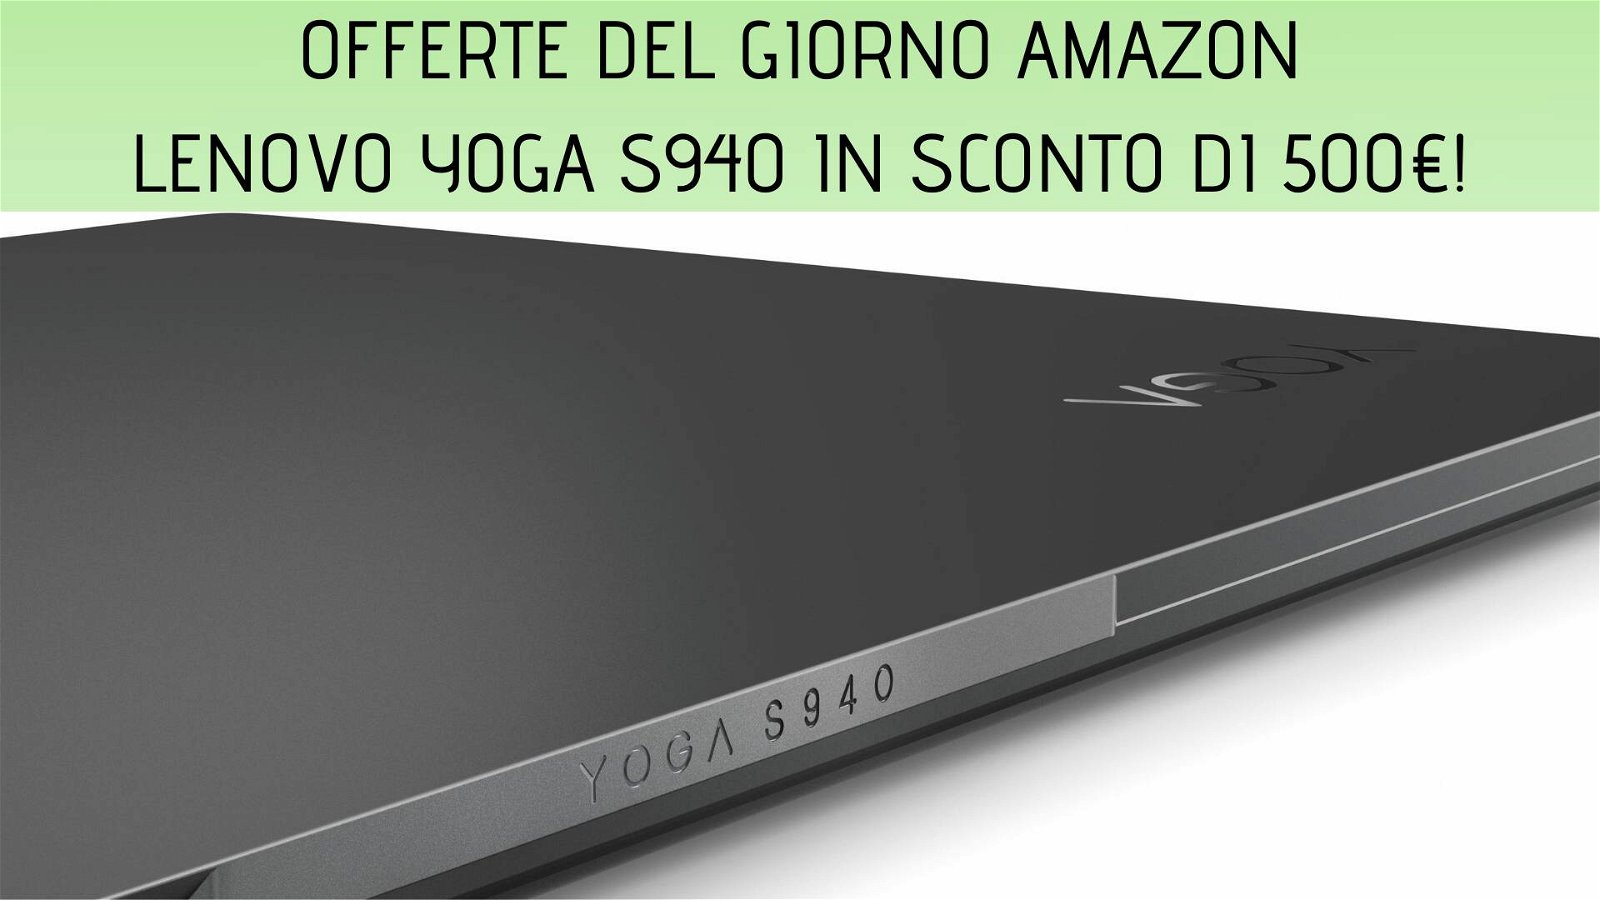 Immagine di Offerte del giorno Amazon: notebook Lenovo Yoga S940 nuovamente scontato di 500 euro!